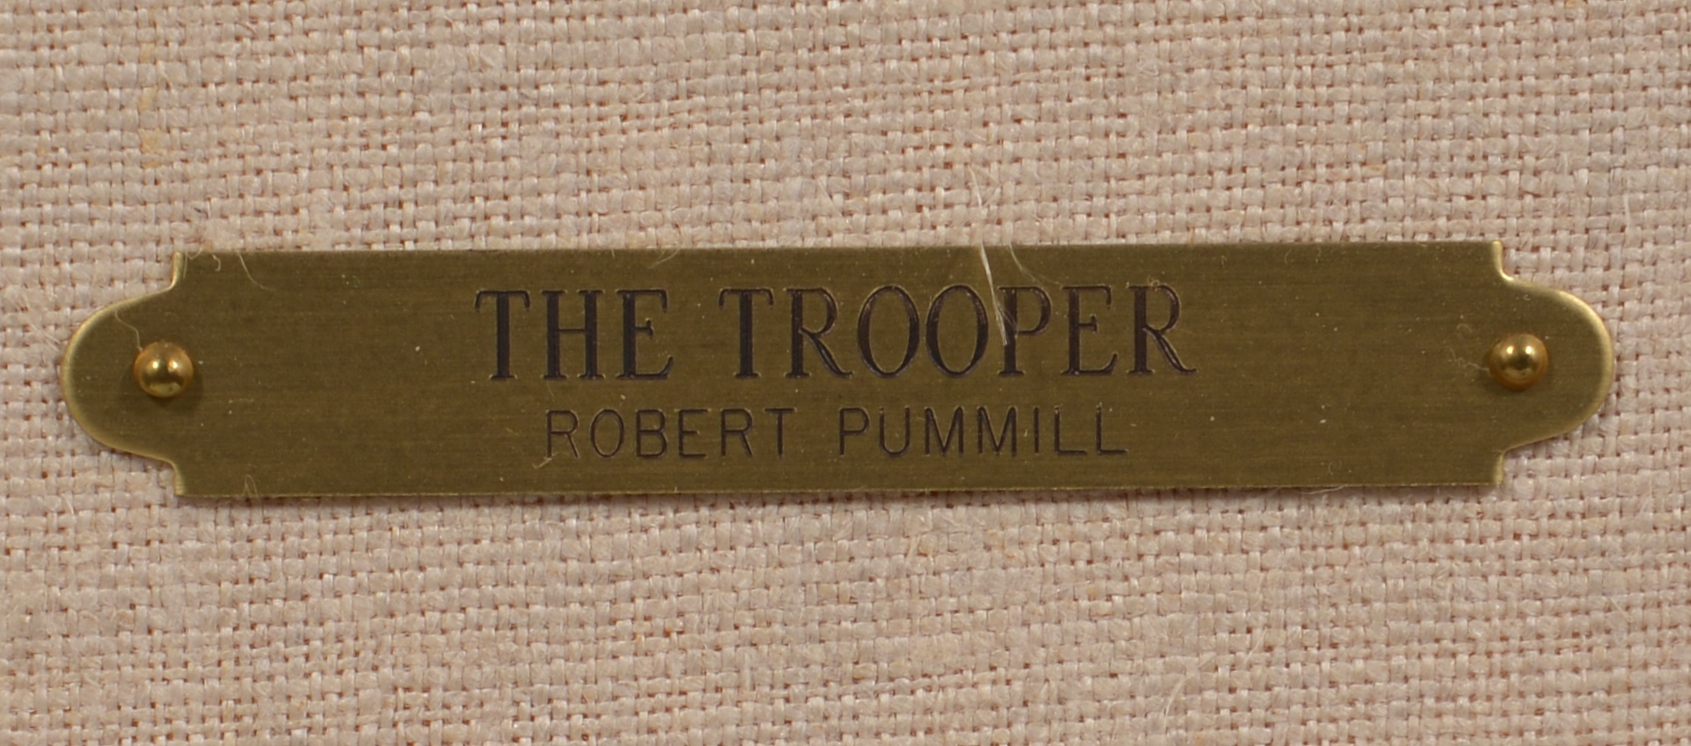 Lot 513: Robert Pummill, O/B, "The Trooper"